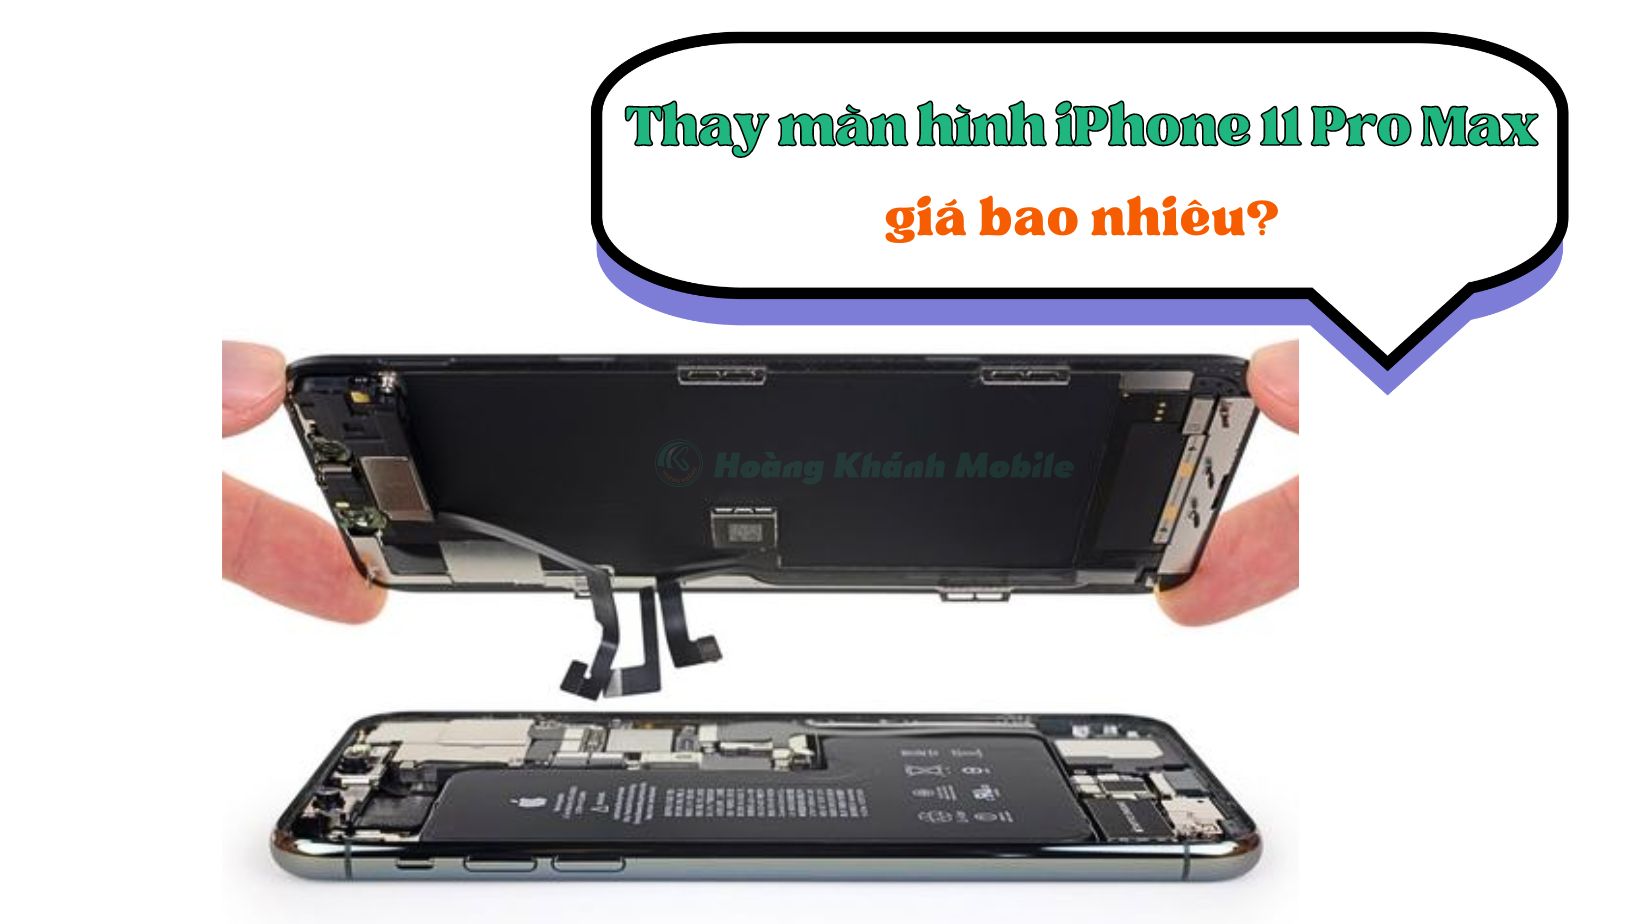 Thay màn hình iPhone 11 Pro Max giá bao nhiêu?